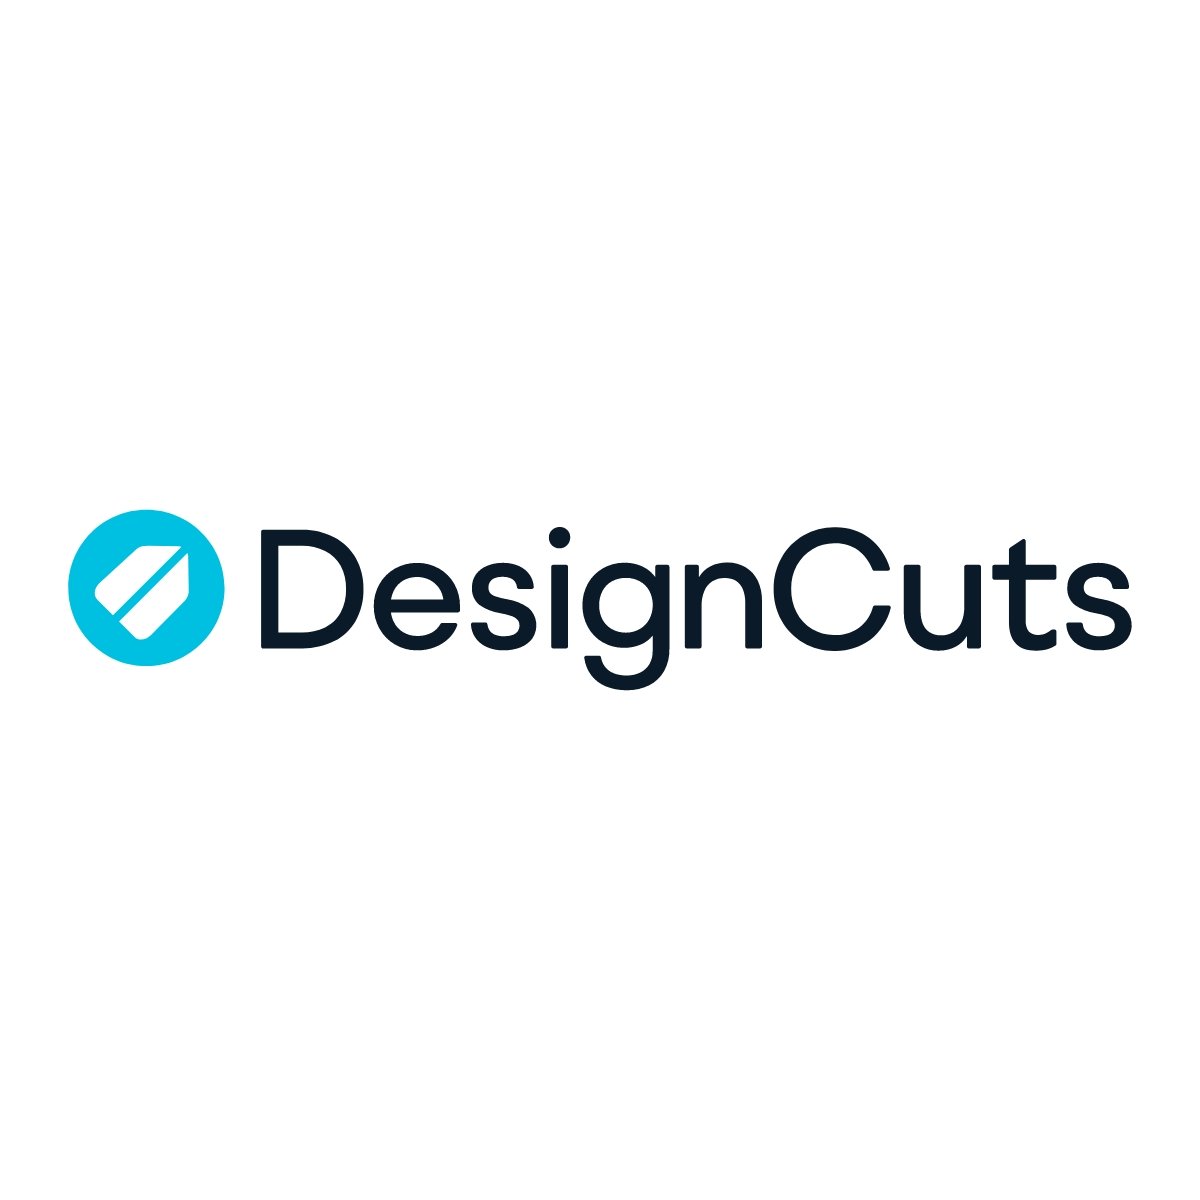 Design Cuts giúp bạn tạo gian hàng và bán sản phẩm đồ họa của mình.